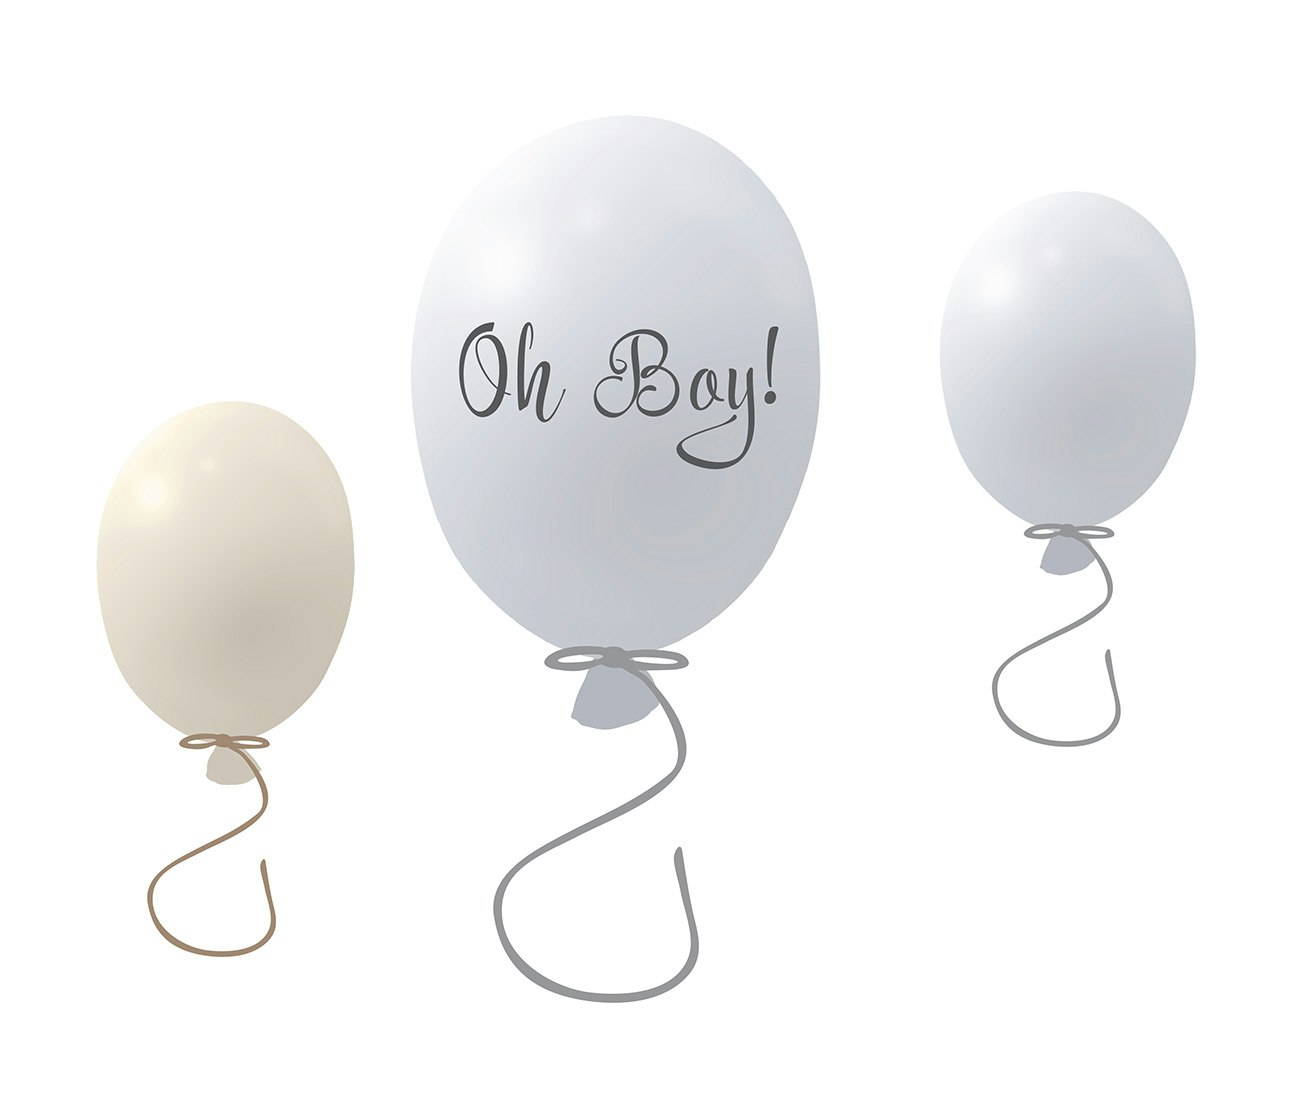 Väggklistermärke partyballonger 3-pack, grey Väggklistermärke bestående av en stor grå ballong med texten Oh boy och två mindre ballonger